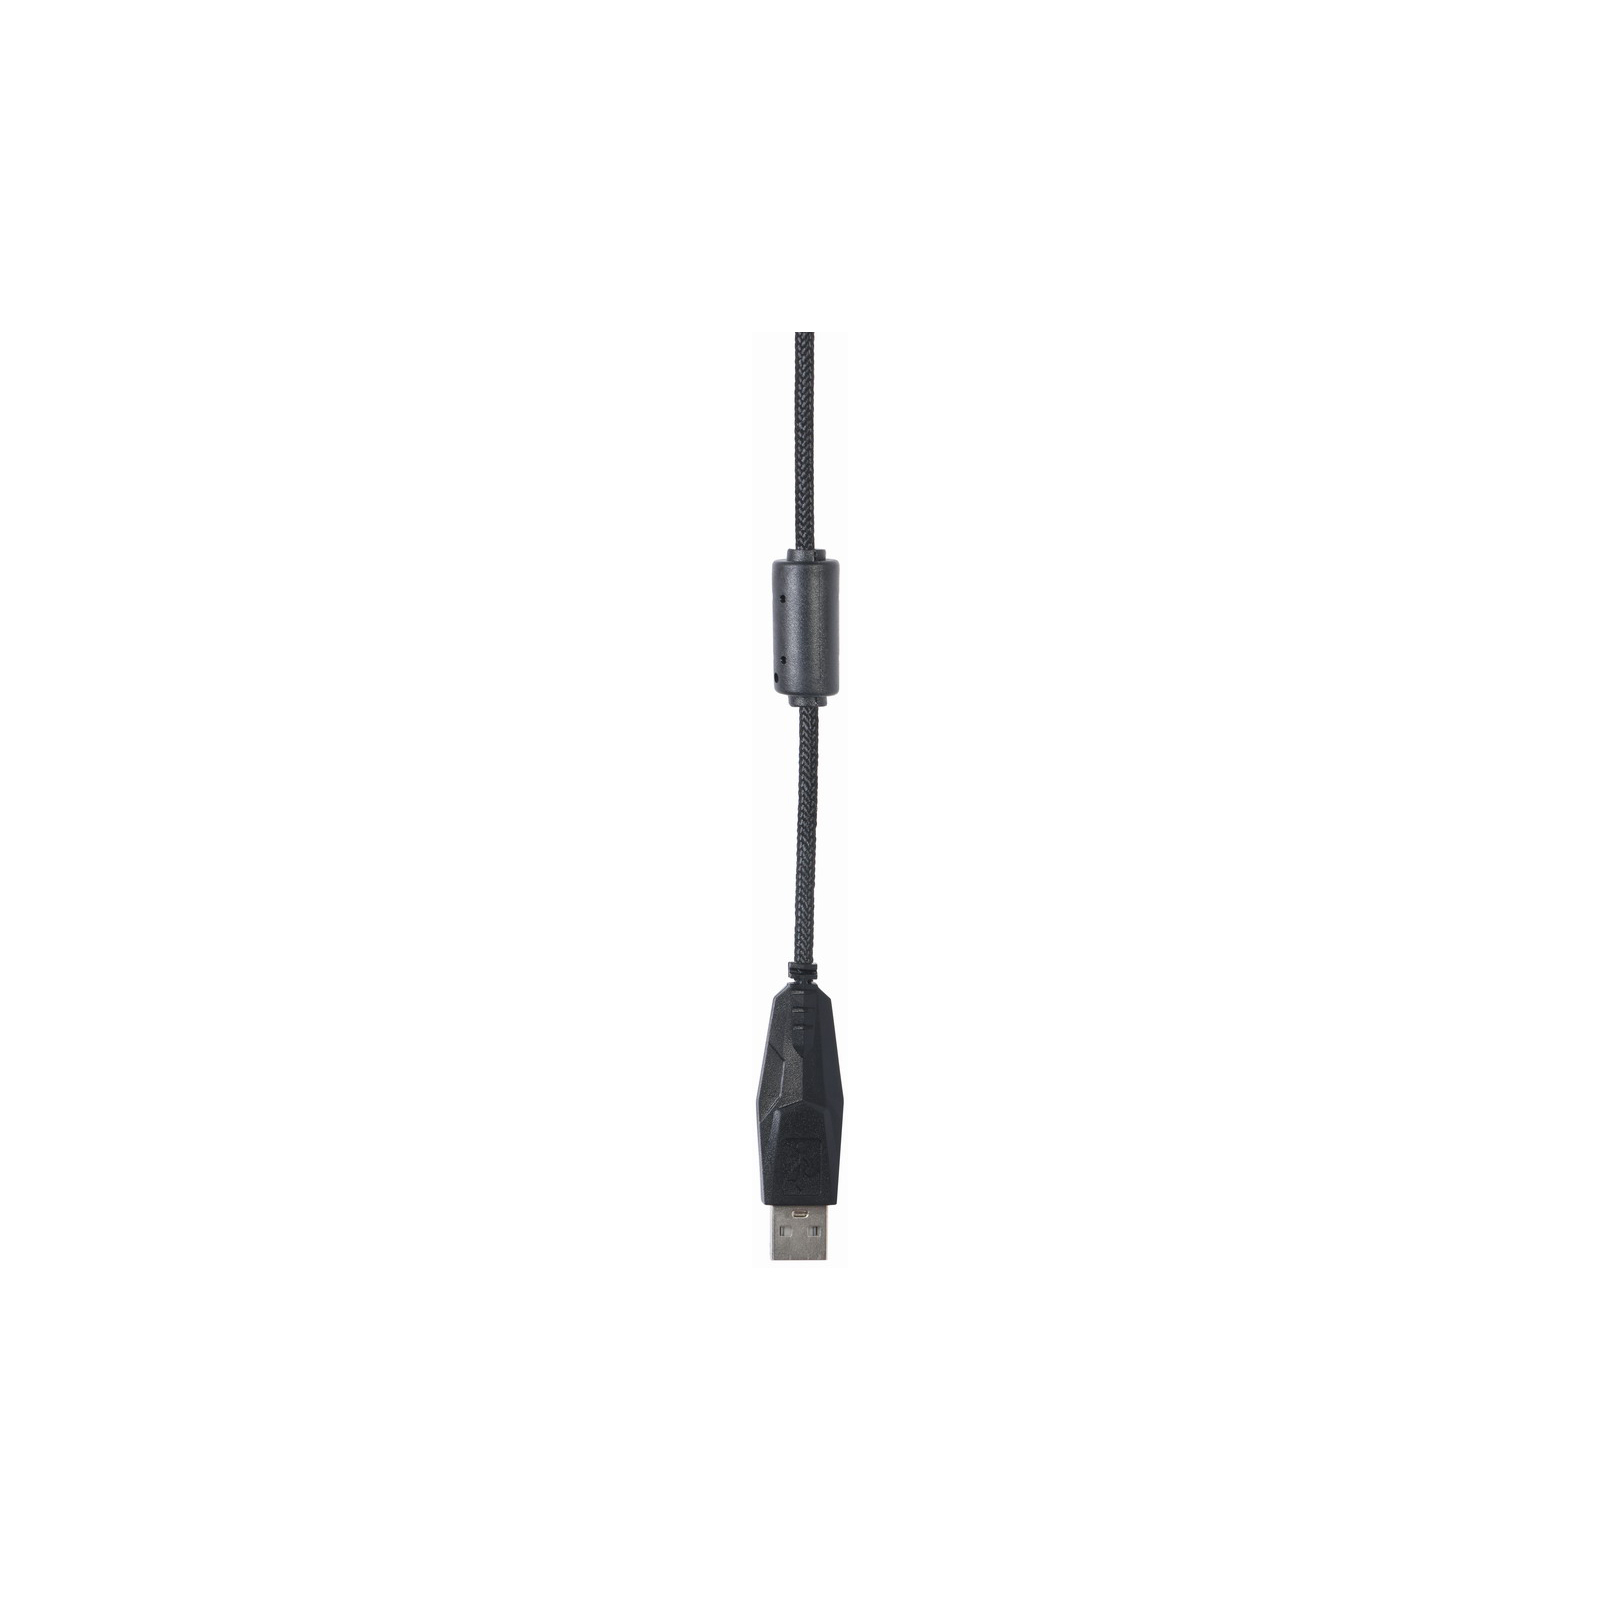 Мышка Gembird MUS-UL-02 USB Black (MUS-UL-02) изображение 6